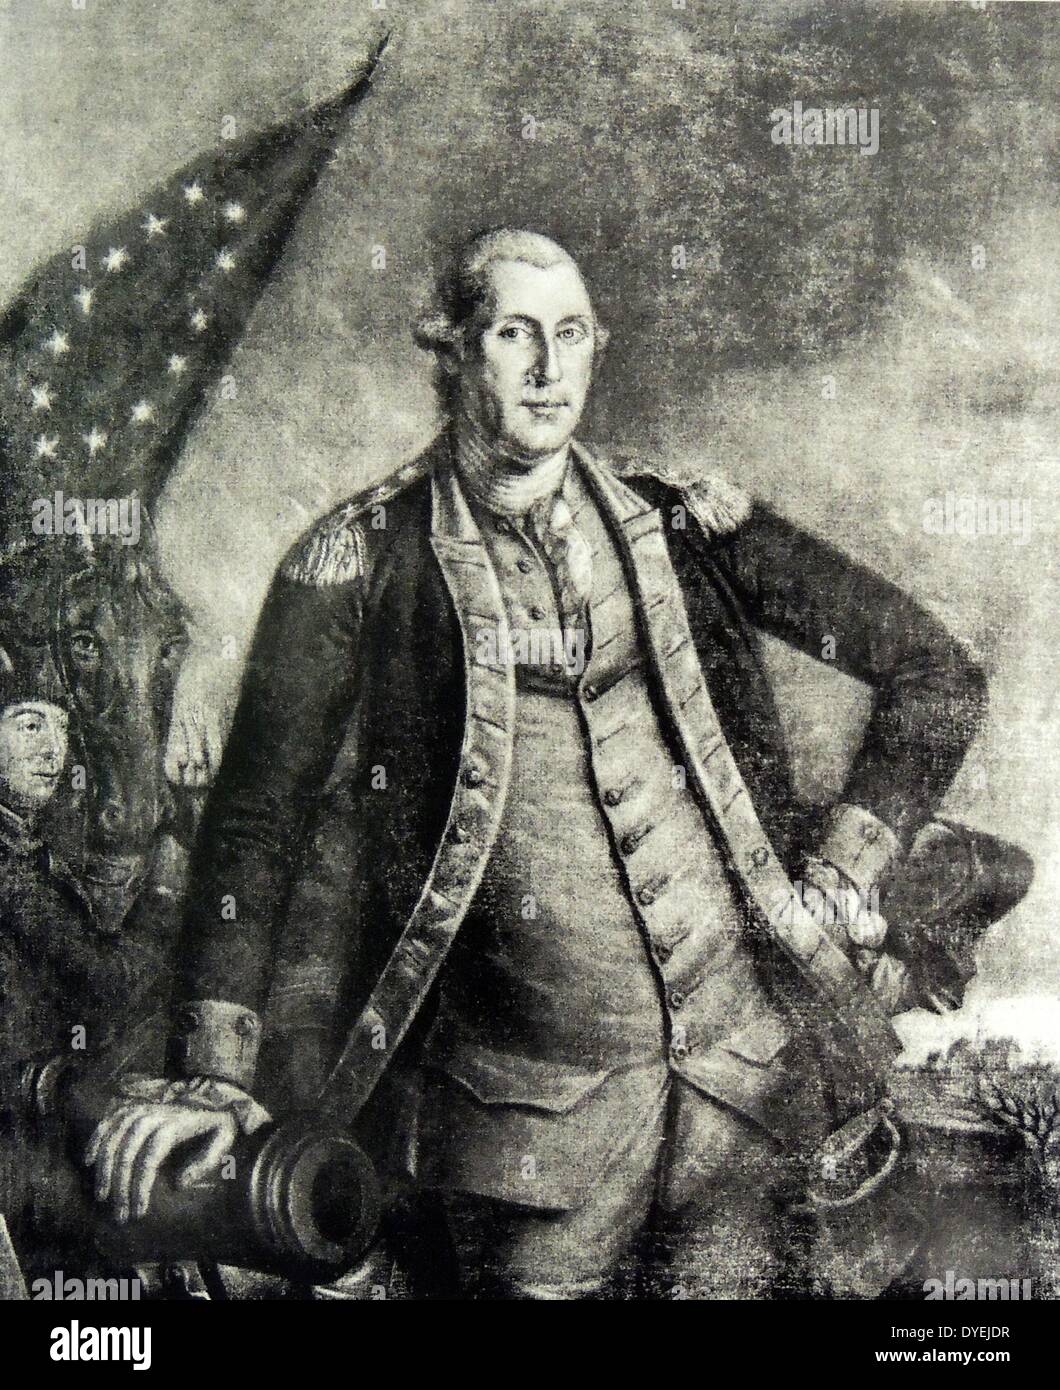 George Washington (22 febbraio 1732 - 14 dicembre 1799) è stato il primo Presidente degli Stati Uniti (1789-1797), il comandante in capo dell'esercito continentale durante la guerra rivoluzionaria americana e uno dei padri fondatori degli Stati Uniti. Foto Stock